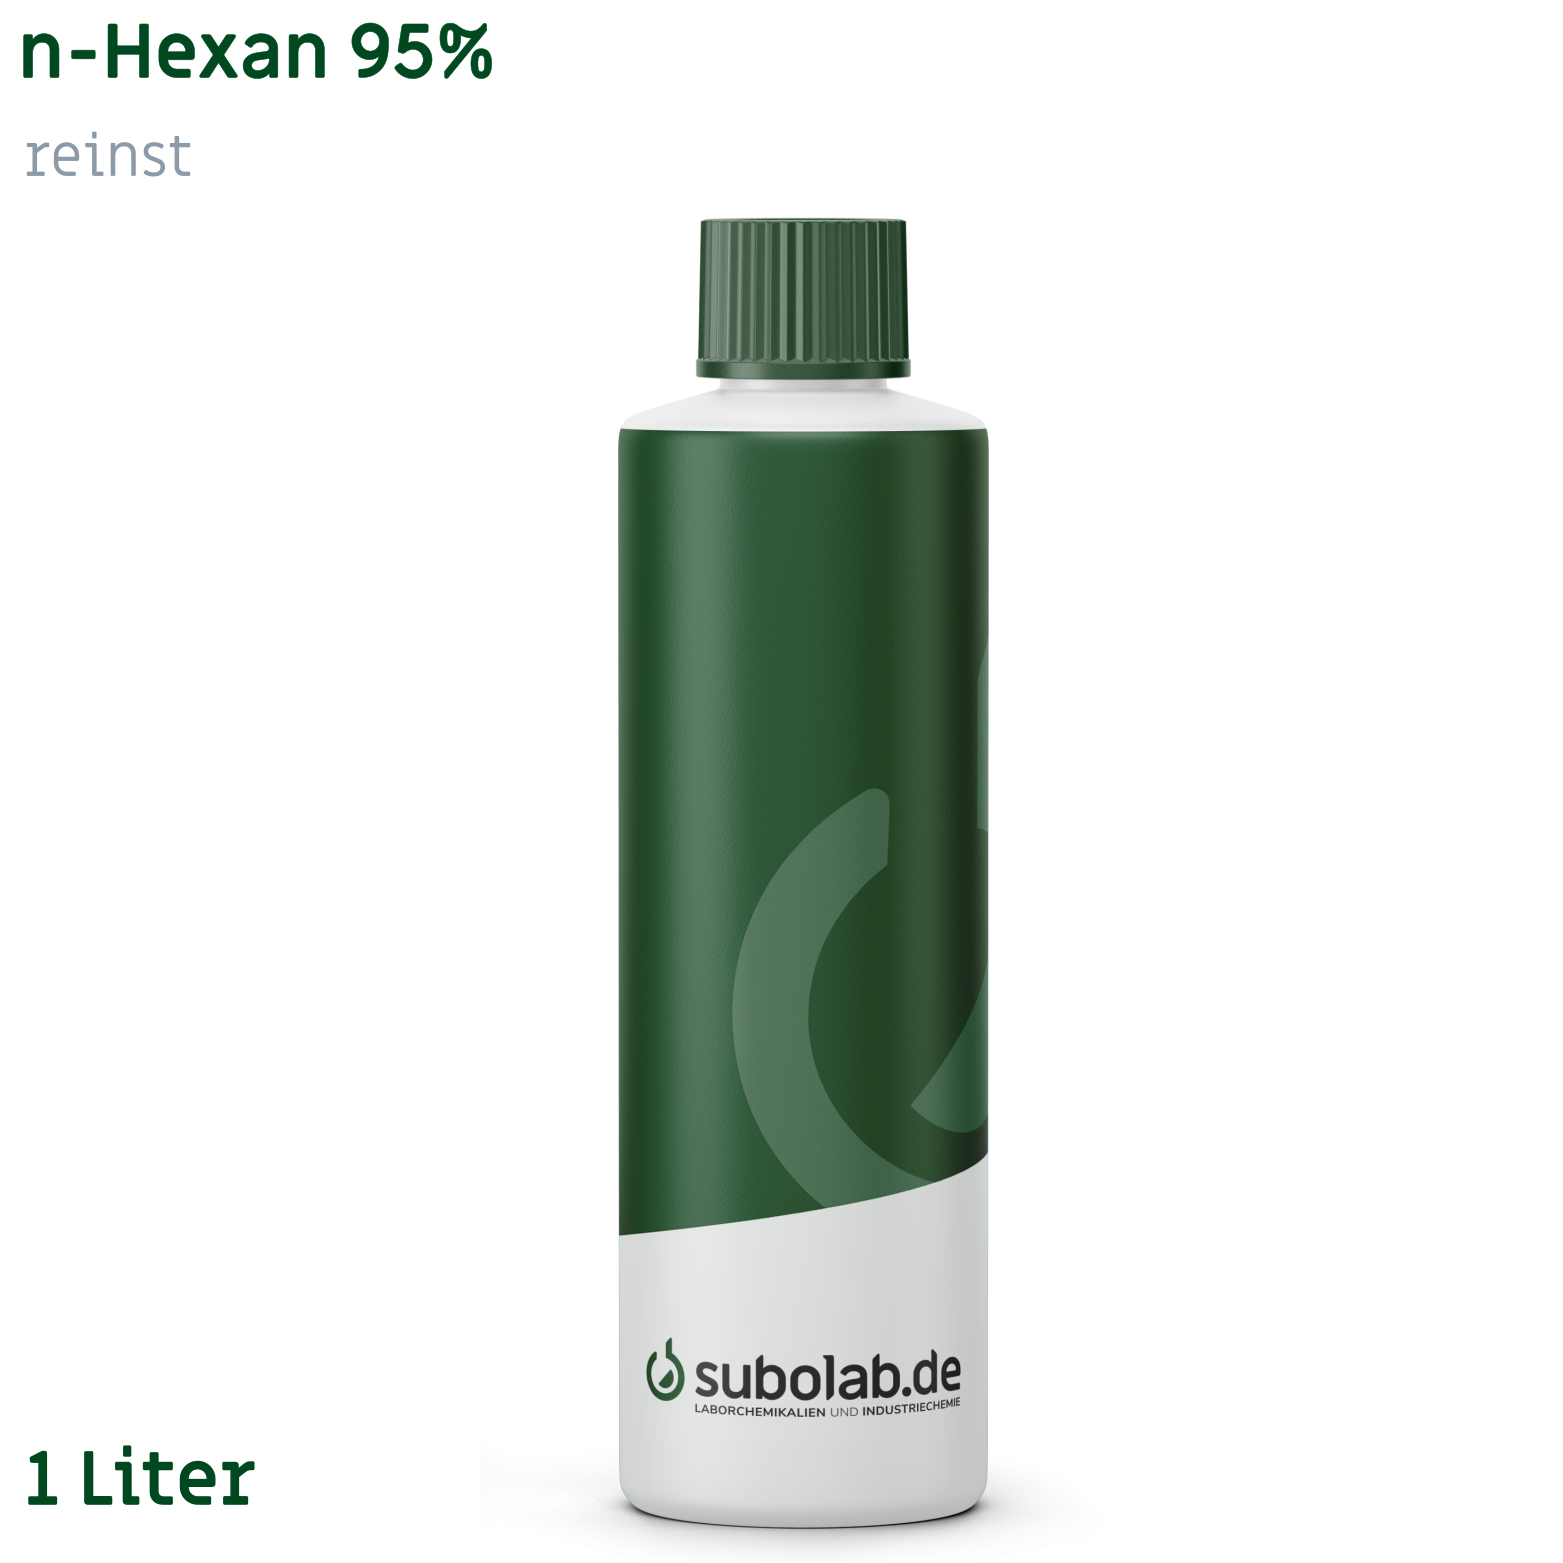 Bild von n-Hexan 95% reinst (1 Liter)